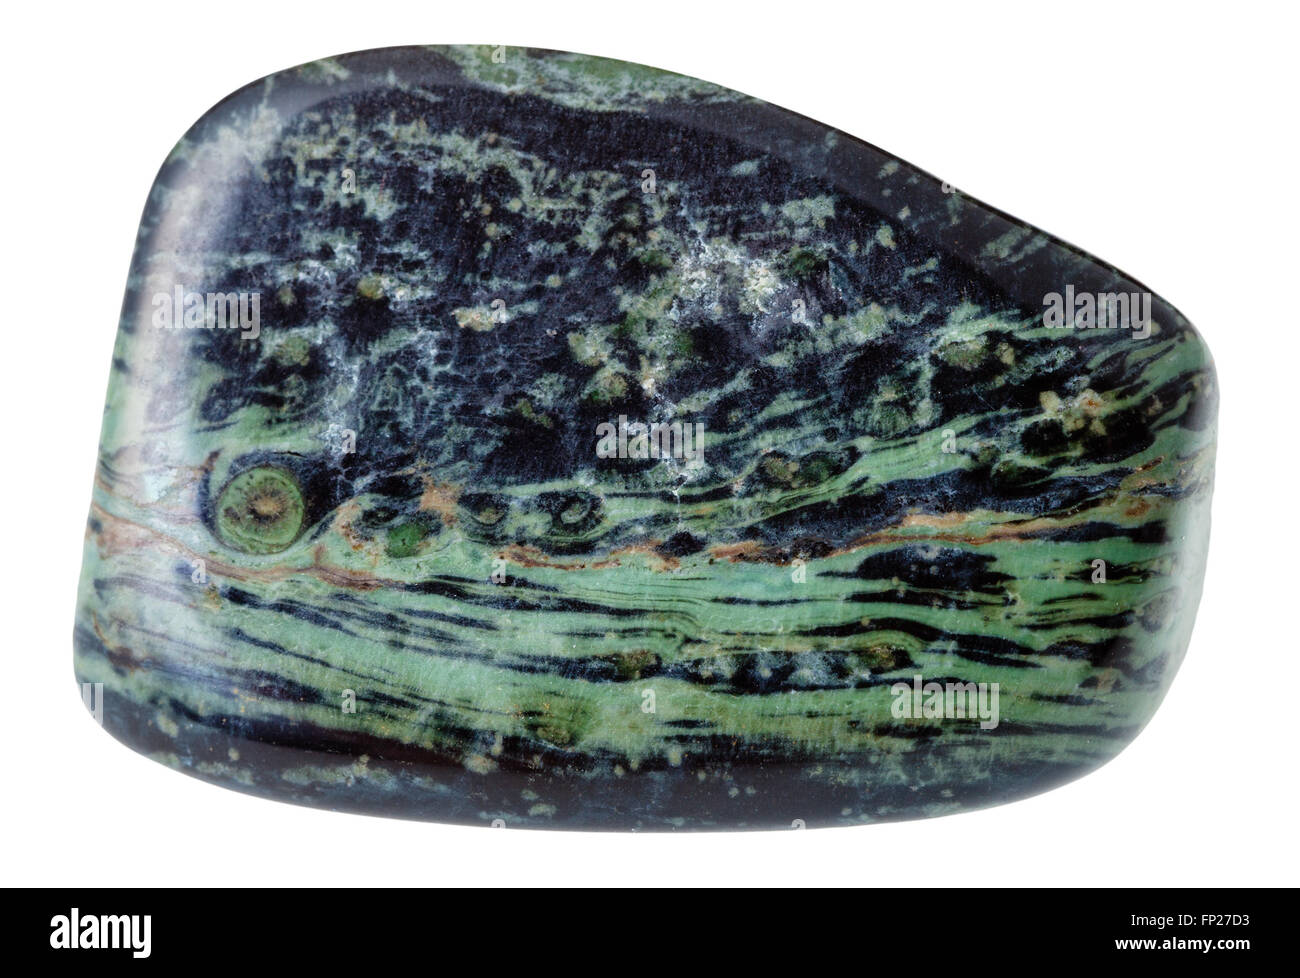 Makroaufnahmen von natürlichen Edelstein - polierte Rhyolith (Madagaskar Jasper, Ozean-Jaspis, kugelförmige Jaspis) mineralischer Edelstein Stein iso Stockfoto